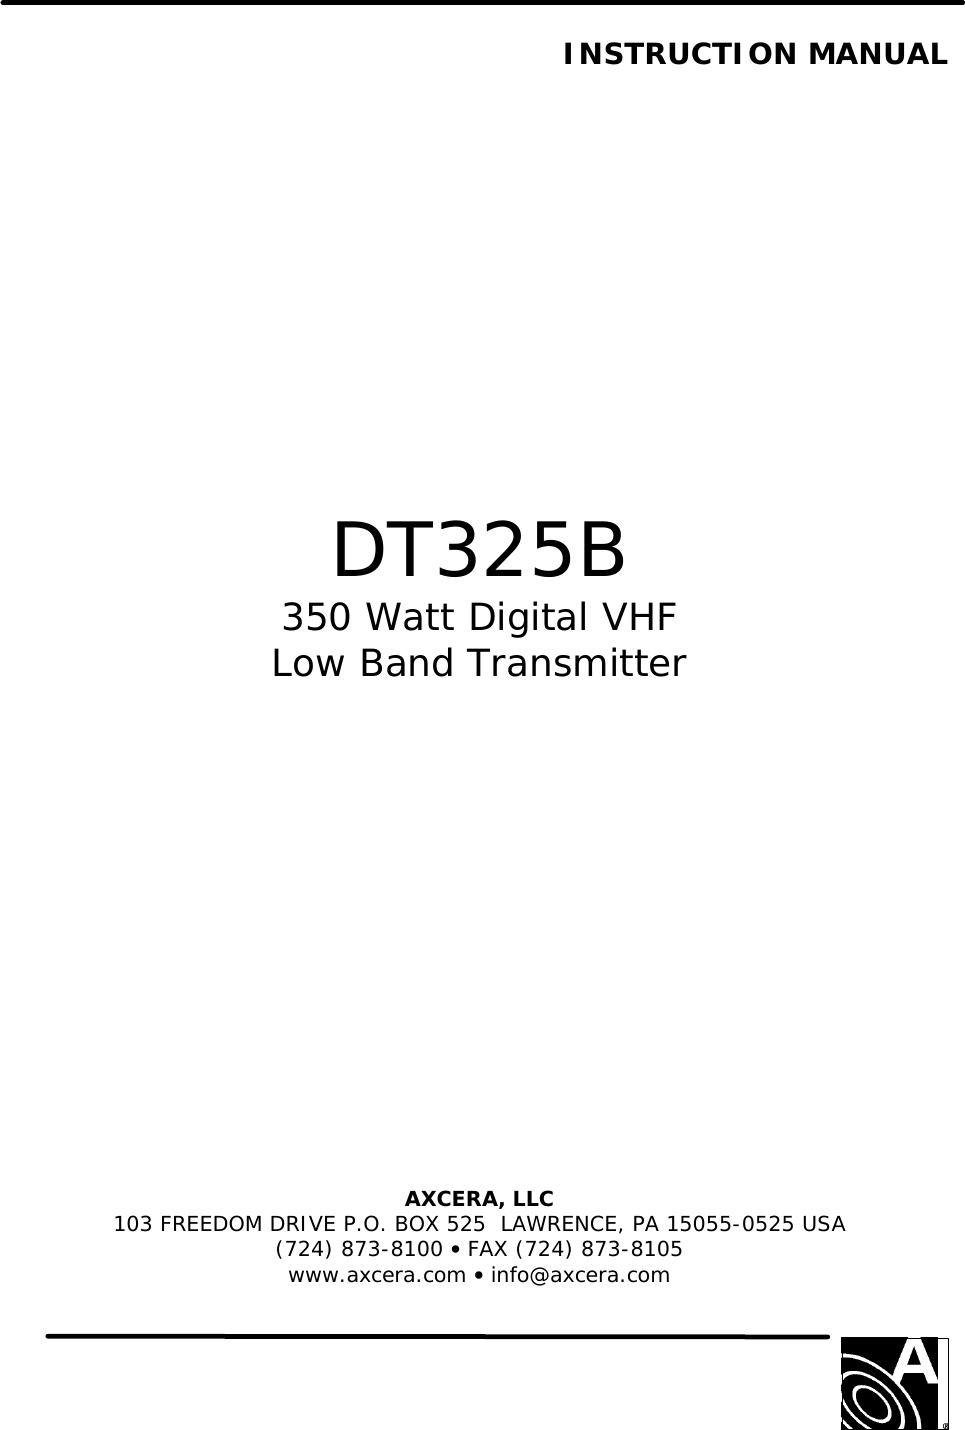      INSTRUCTION MANUAL                   DT325B 350 Watt Digital VHF Low Band Transmitter               AXCERA, LLC  103 FREEDOM DRIVE P.O. BOX 525  LAWRENCE, PA 15055-0525 USA (724) 873-8100 • FAX (724) 873-8105 www.axcera.com • info@axcera.com     